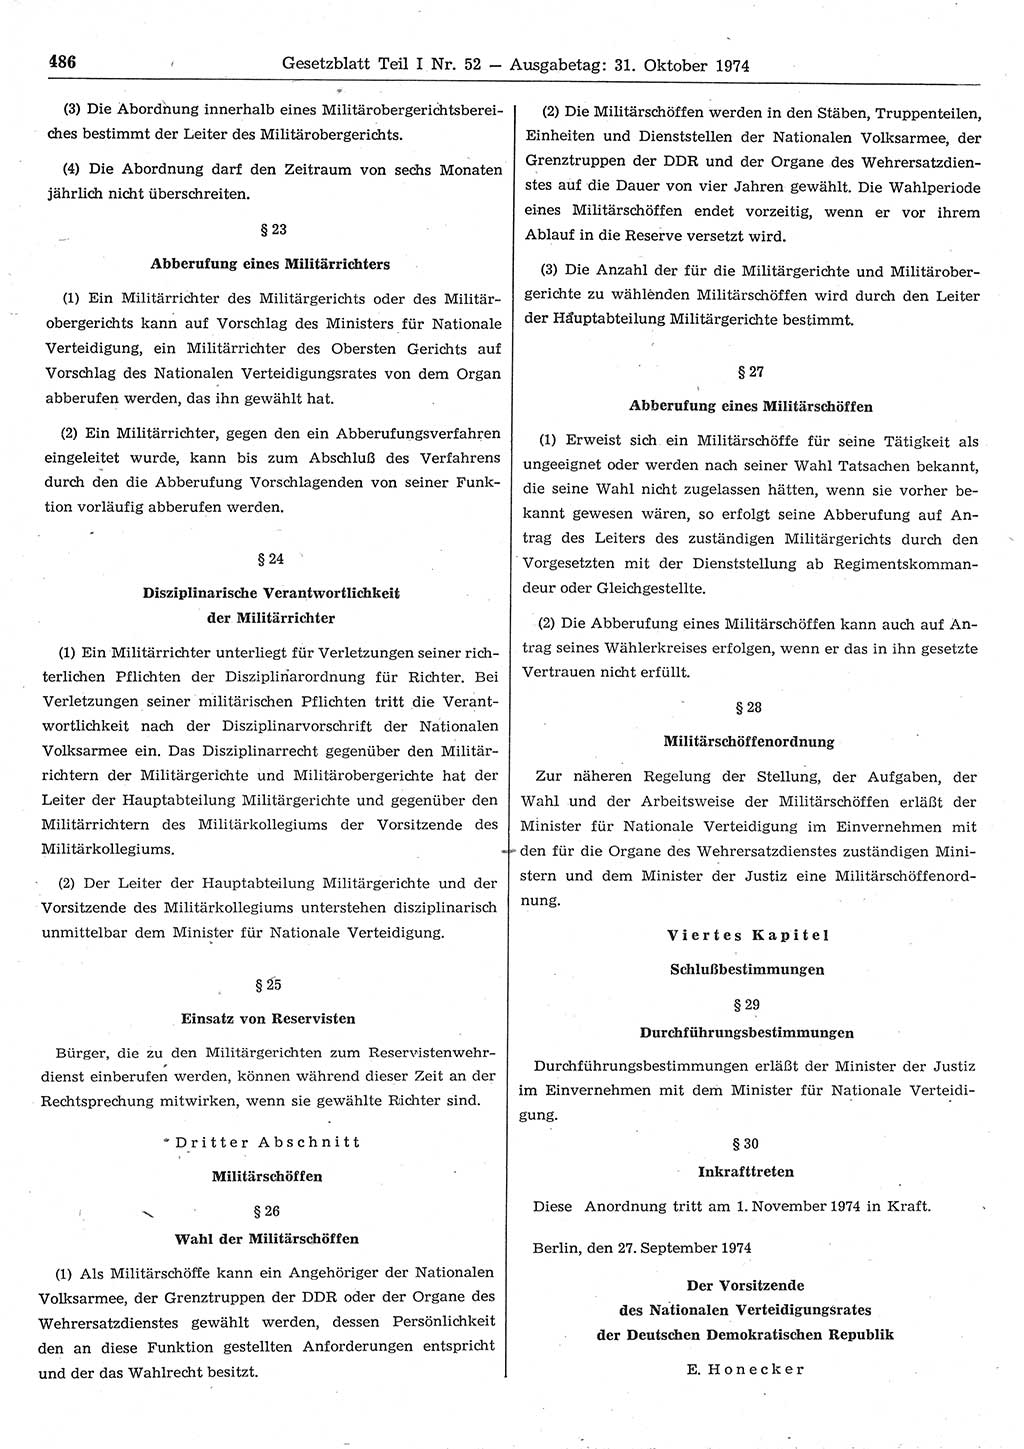 Gesetzblatt (GBl.) der Deutschen Demokratischen Republik (DDR) Teil Ⅰ 1974, Seite 486 (GBl. DDR Ⅰ 1974, S. 486)